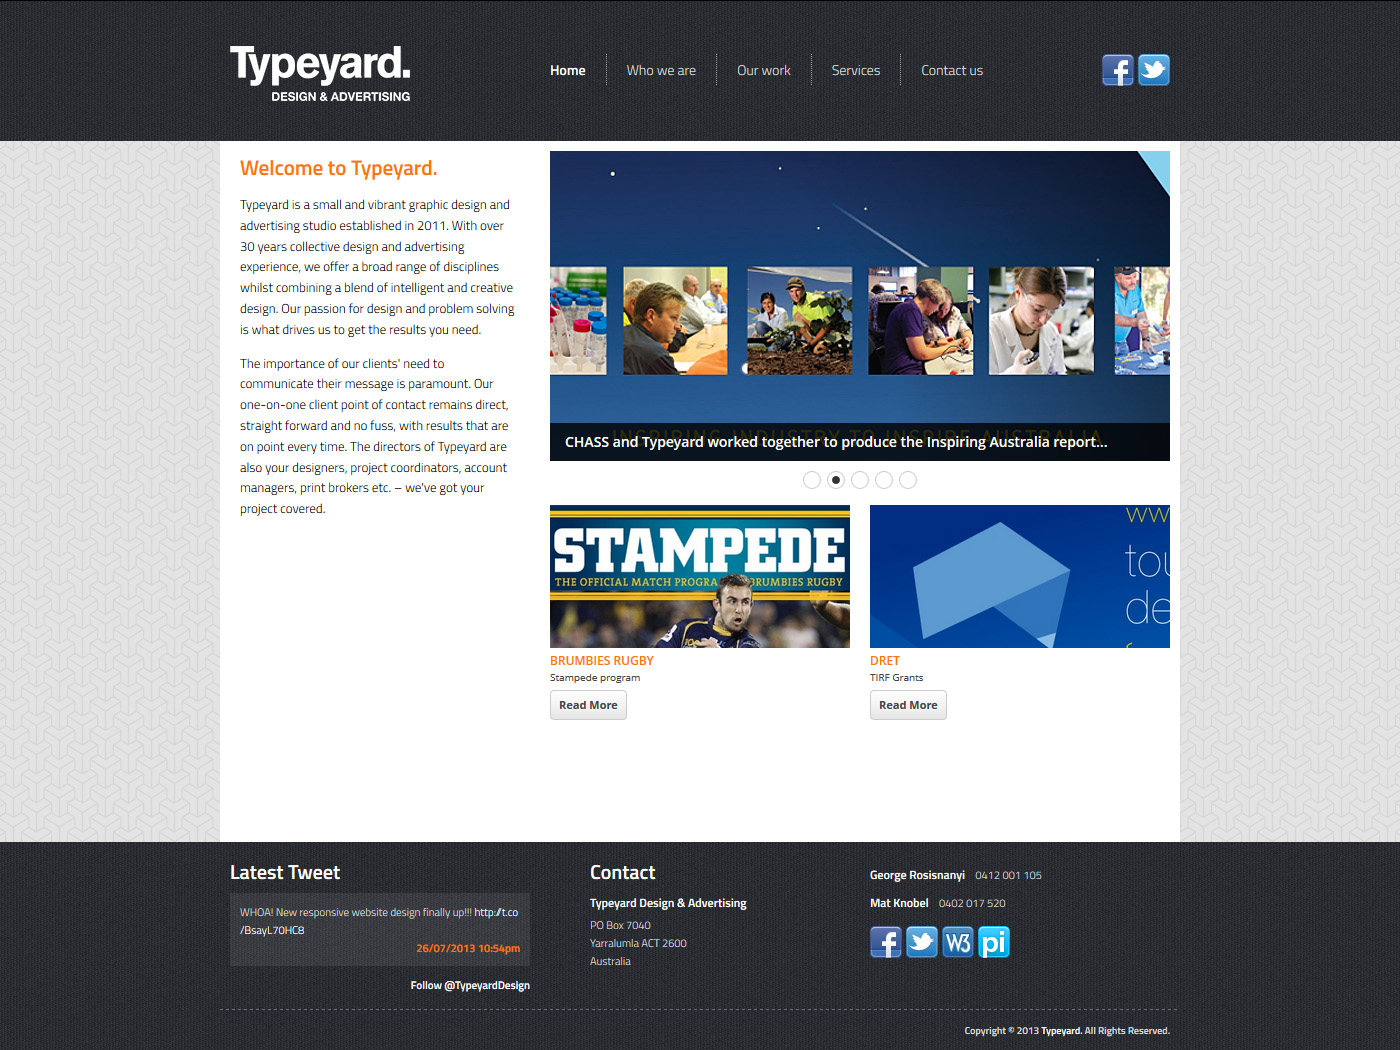 Typeyard Design & Advertising (Praxis Interactive)